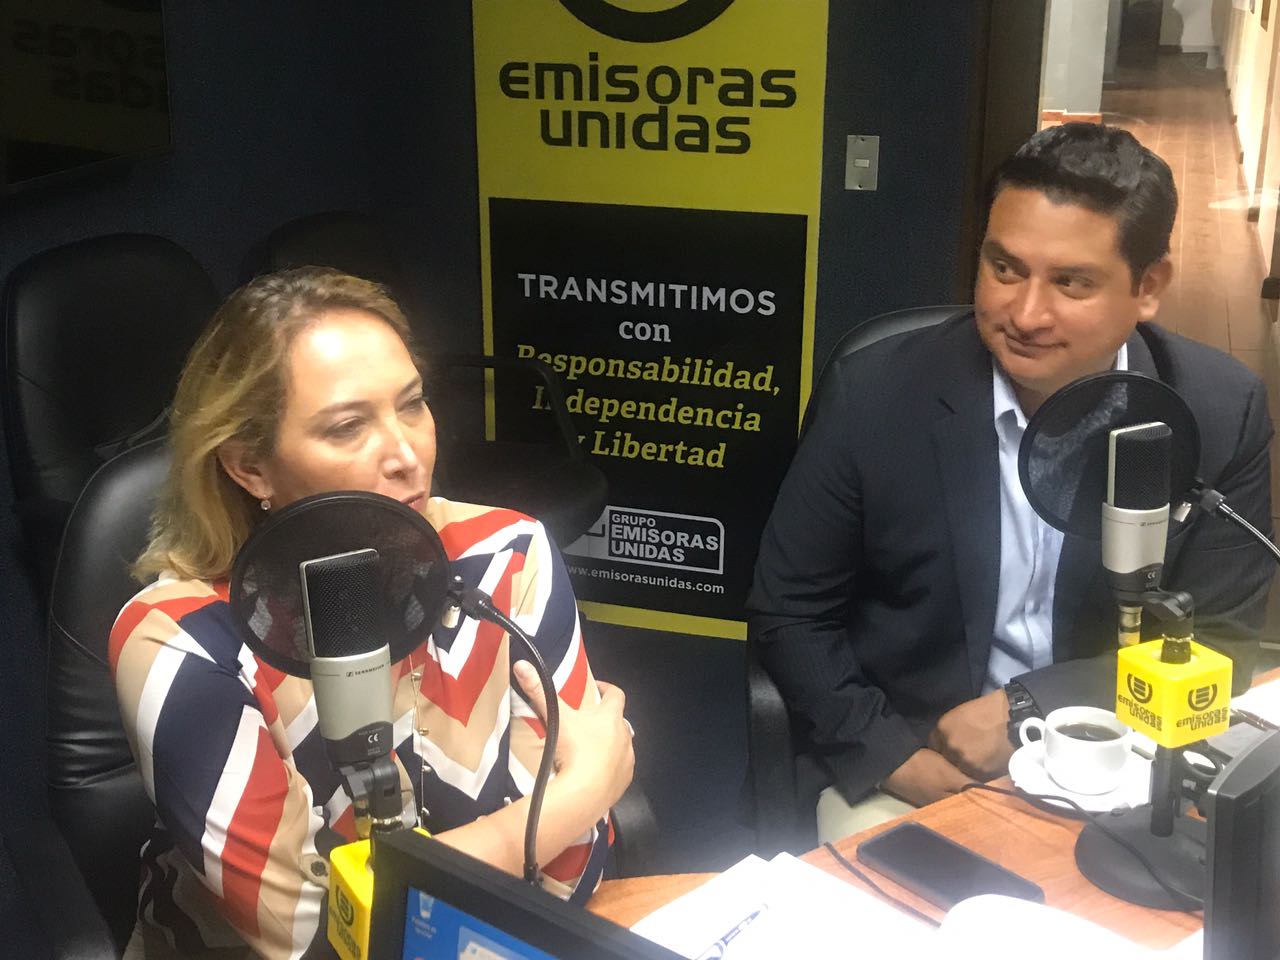 Carmen Lucía Salguero: "Pacto Hambre Cero ha sido el mayor fraude”